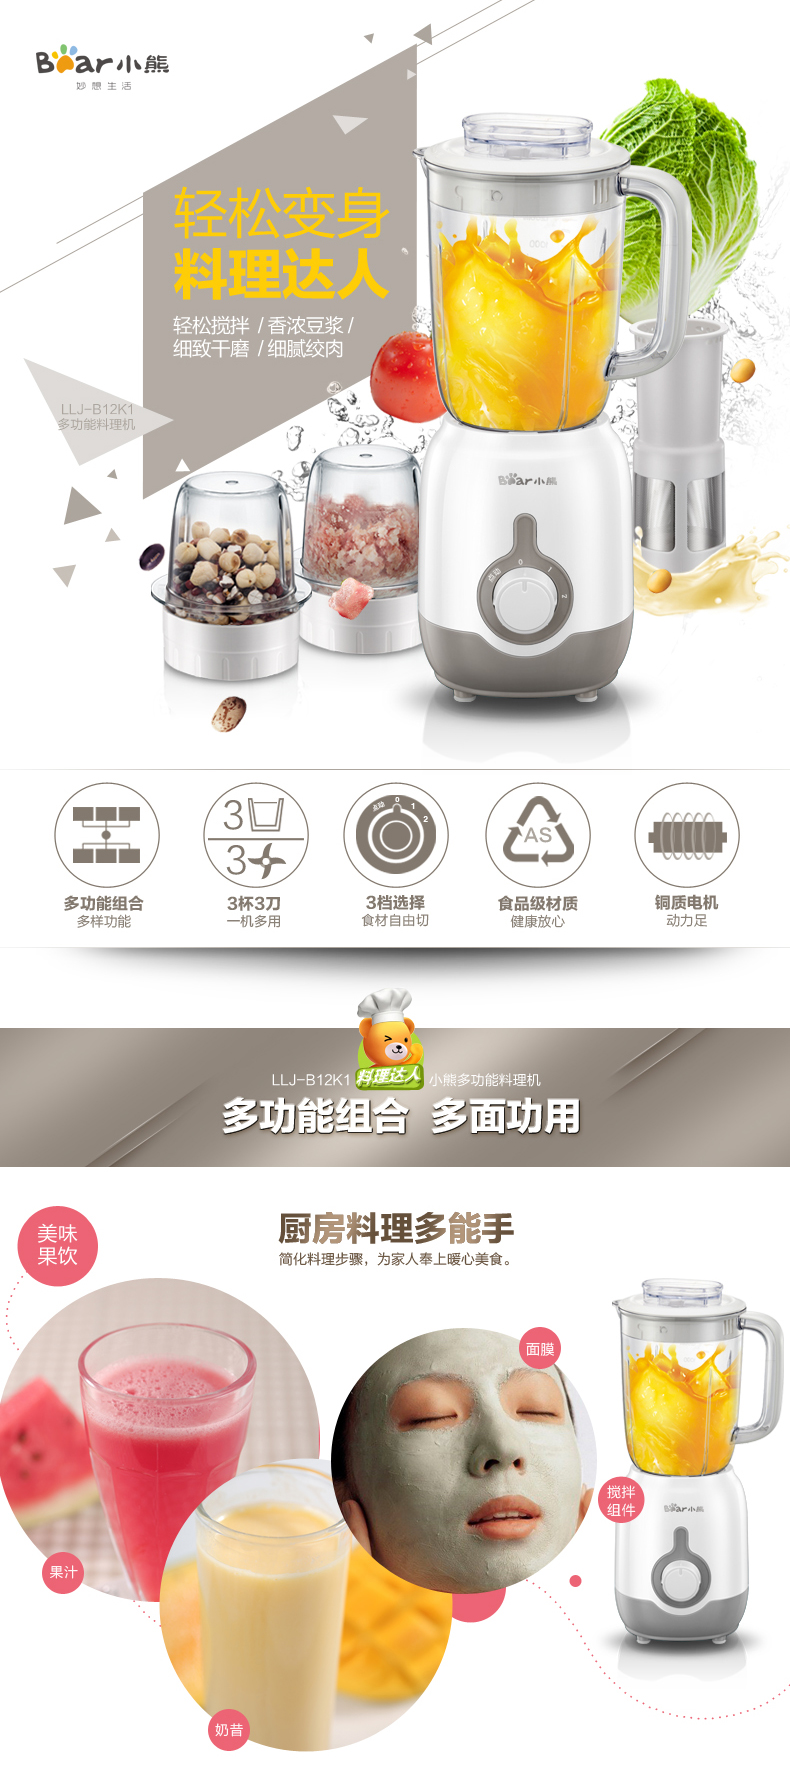 Bear/小熊 LLJ-B12K1 料理机家用辅食绞肉豆浆榨果汁多功能搅拌机